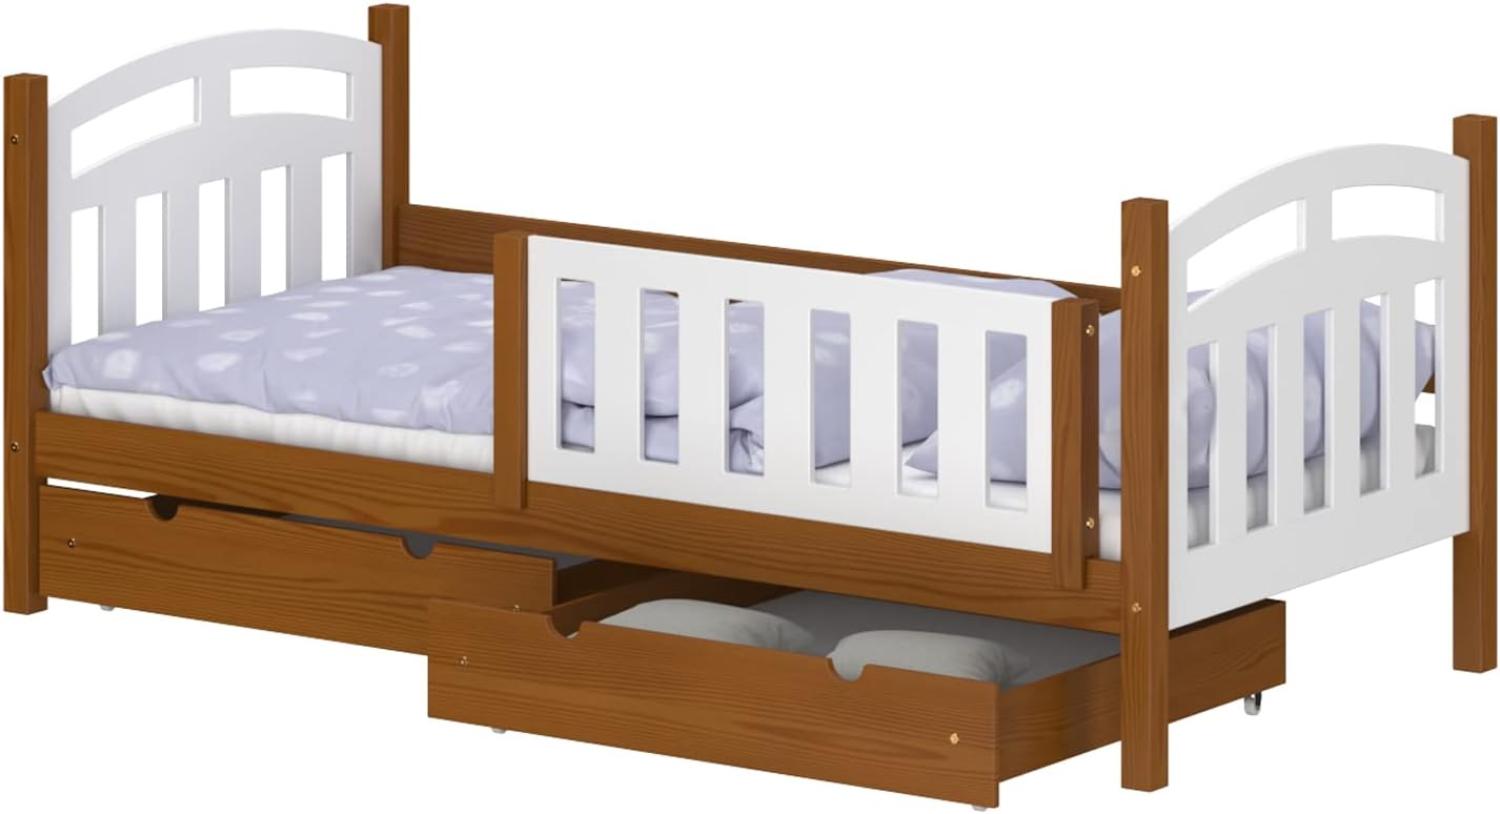 WNM Group Kinderbett mit Rausfallschutz Suzie - Jugenbett aus Massivholz - Bett mit 2 Schubladen für Mädchen und Jungen - Funktionsbett 190x80 cm - Braun Bild 1